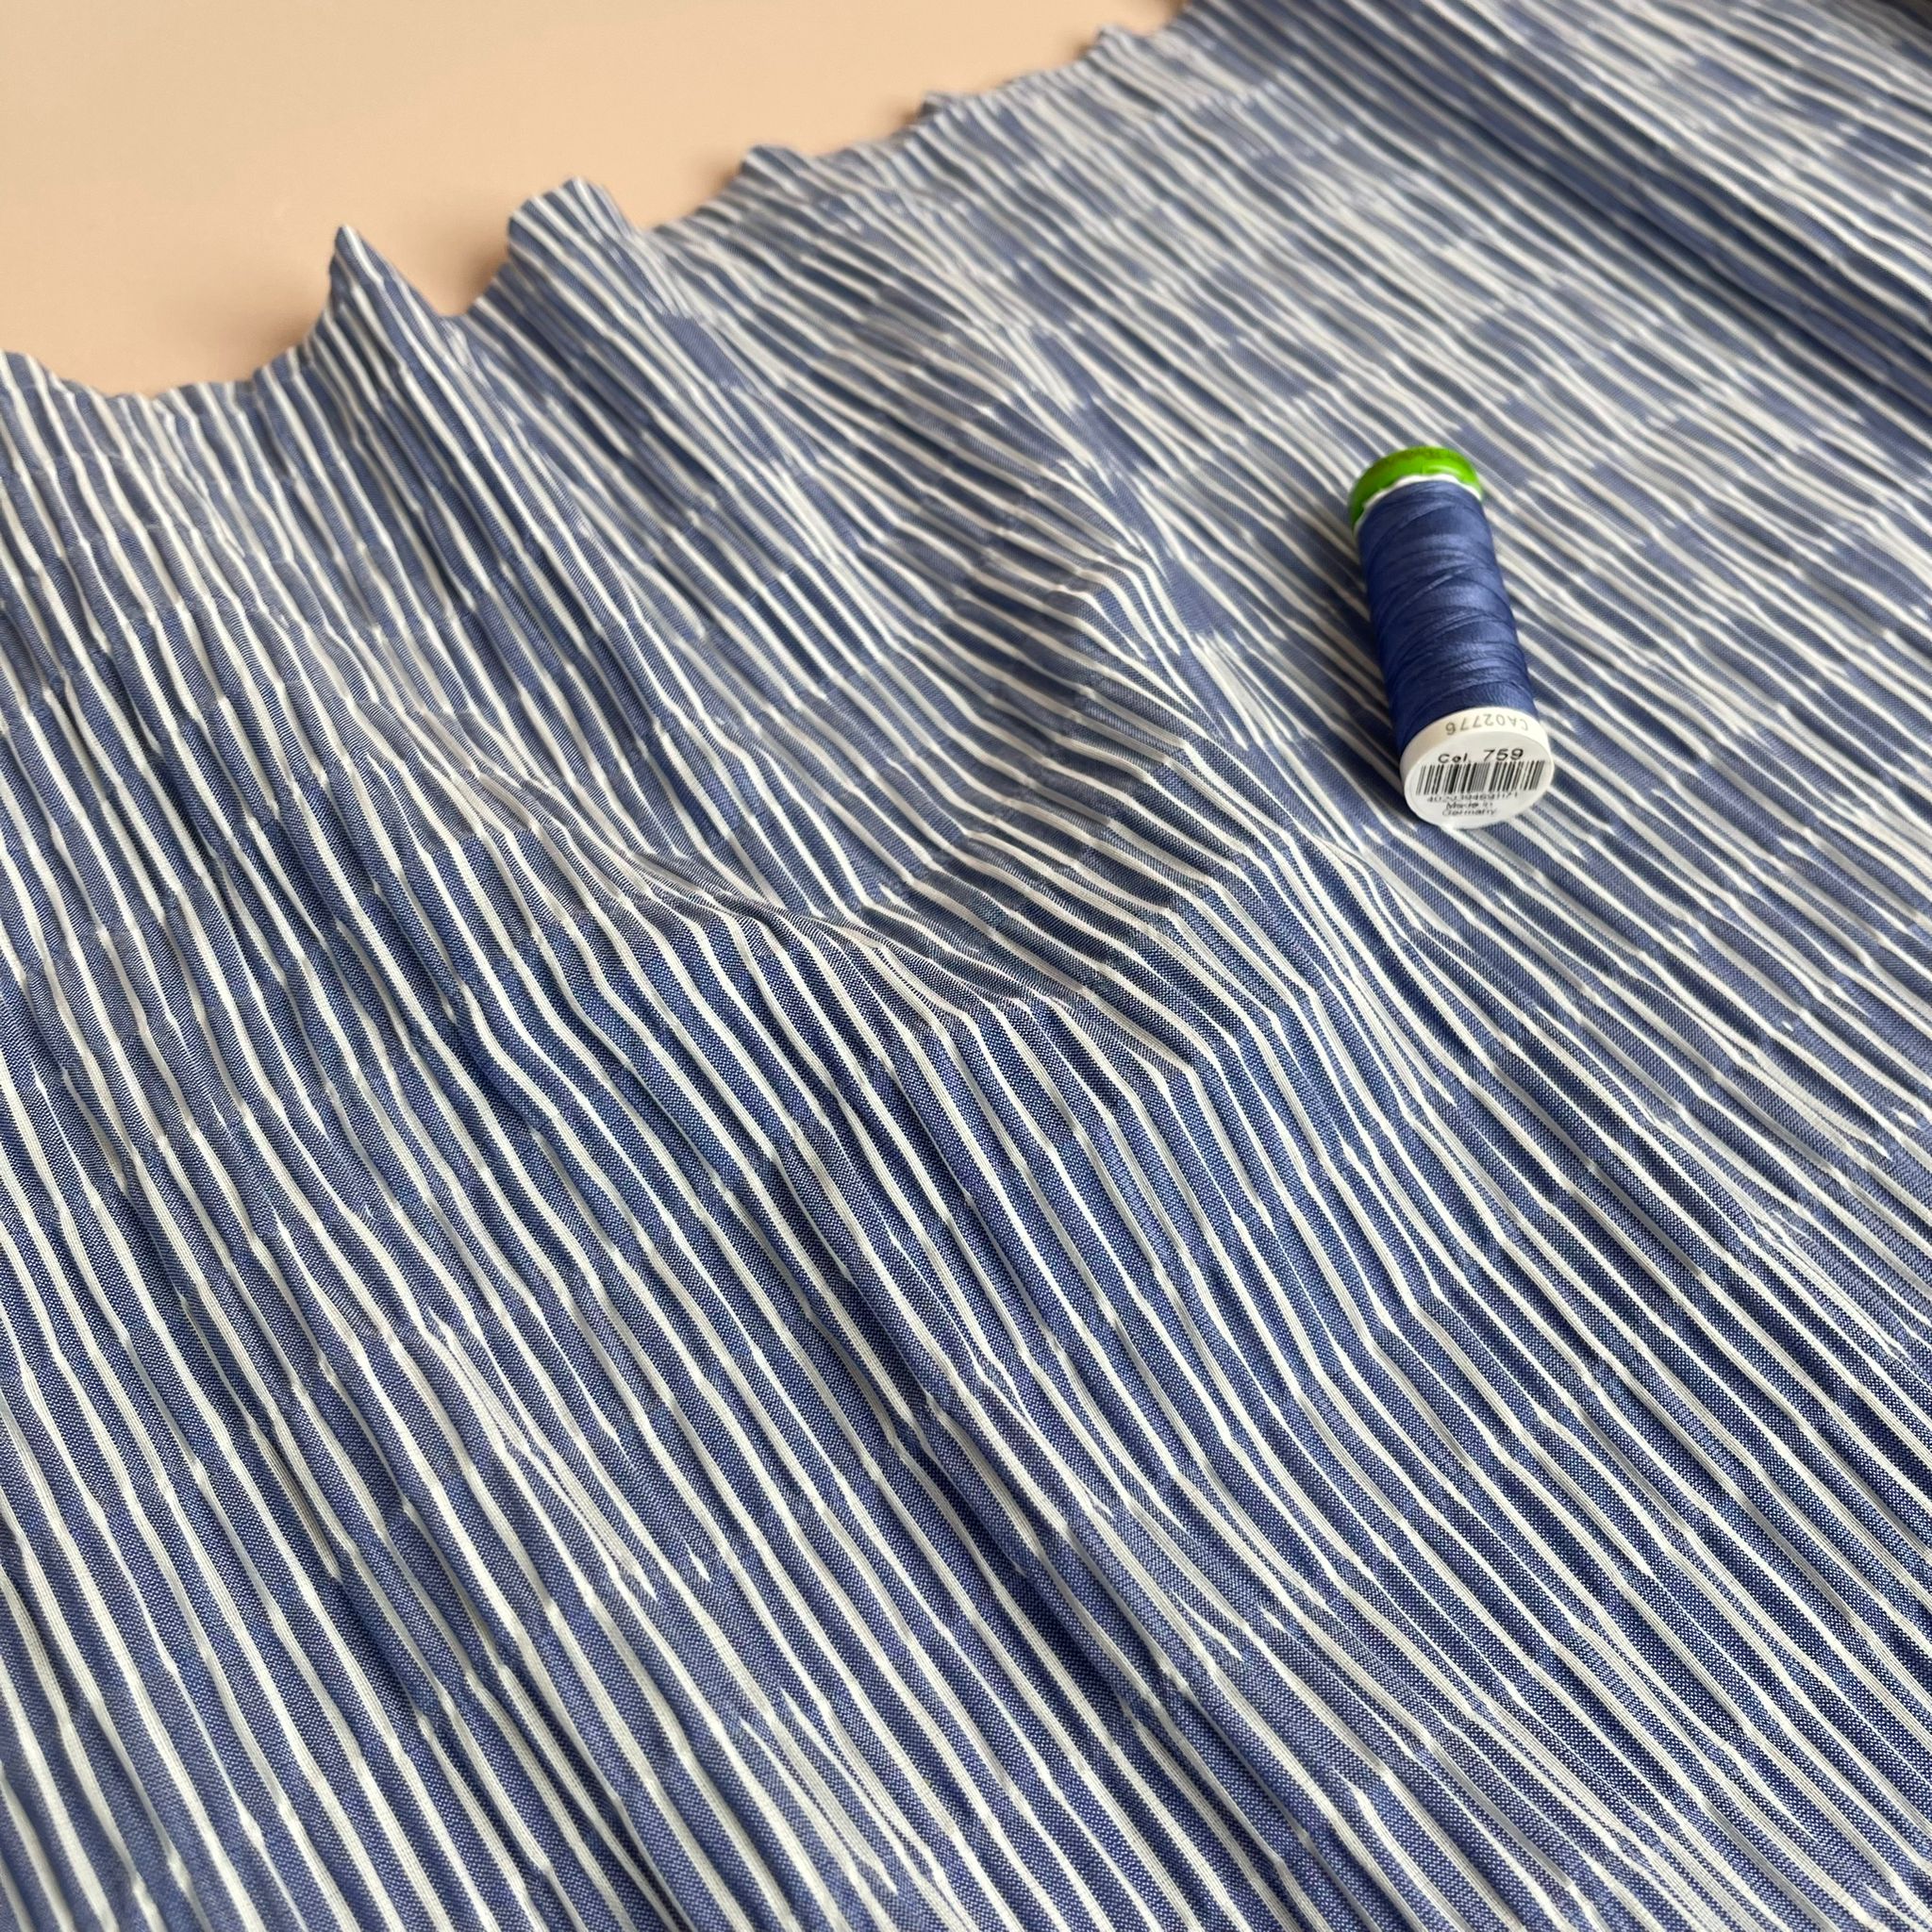 REMNANT 1.36 Metres - Wavy Stripes Cotton Seersucker Fabric